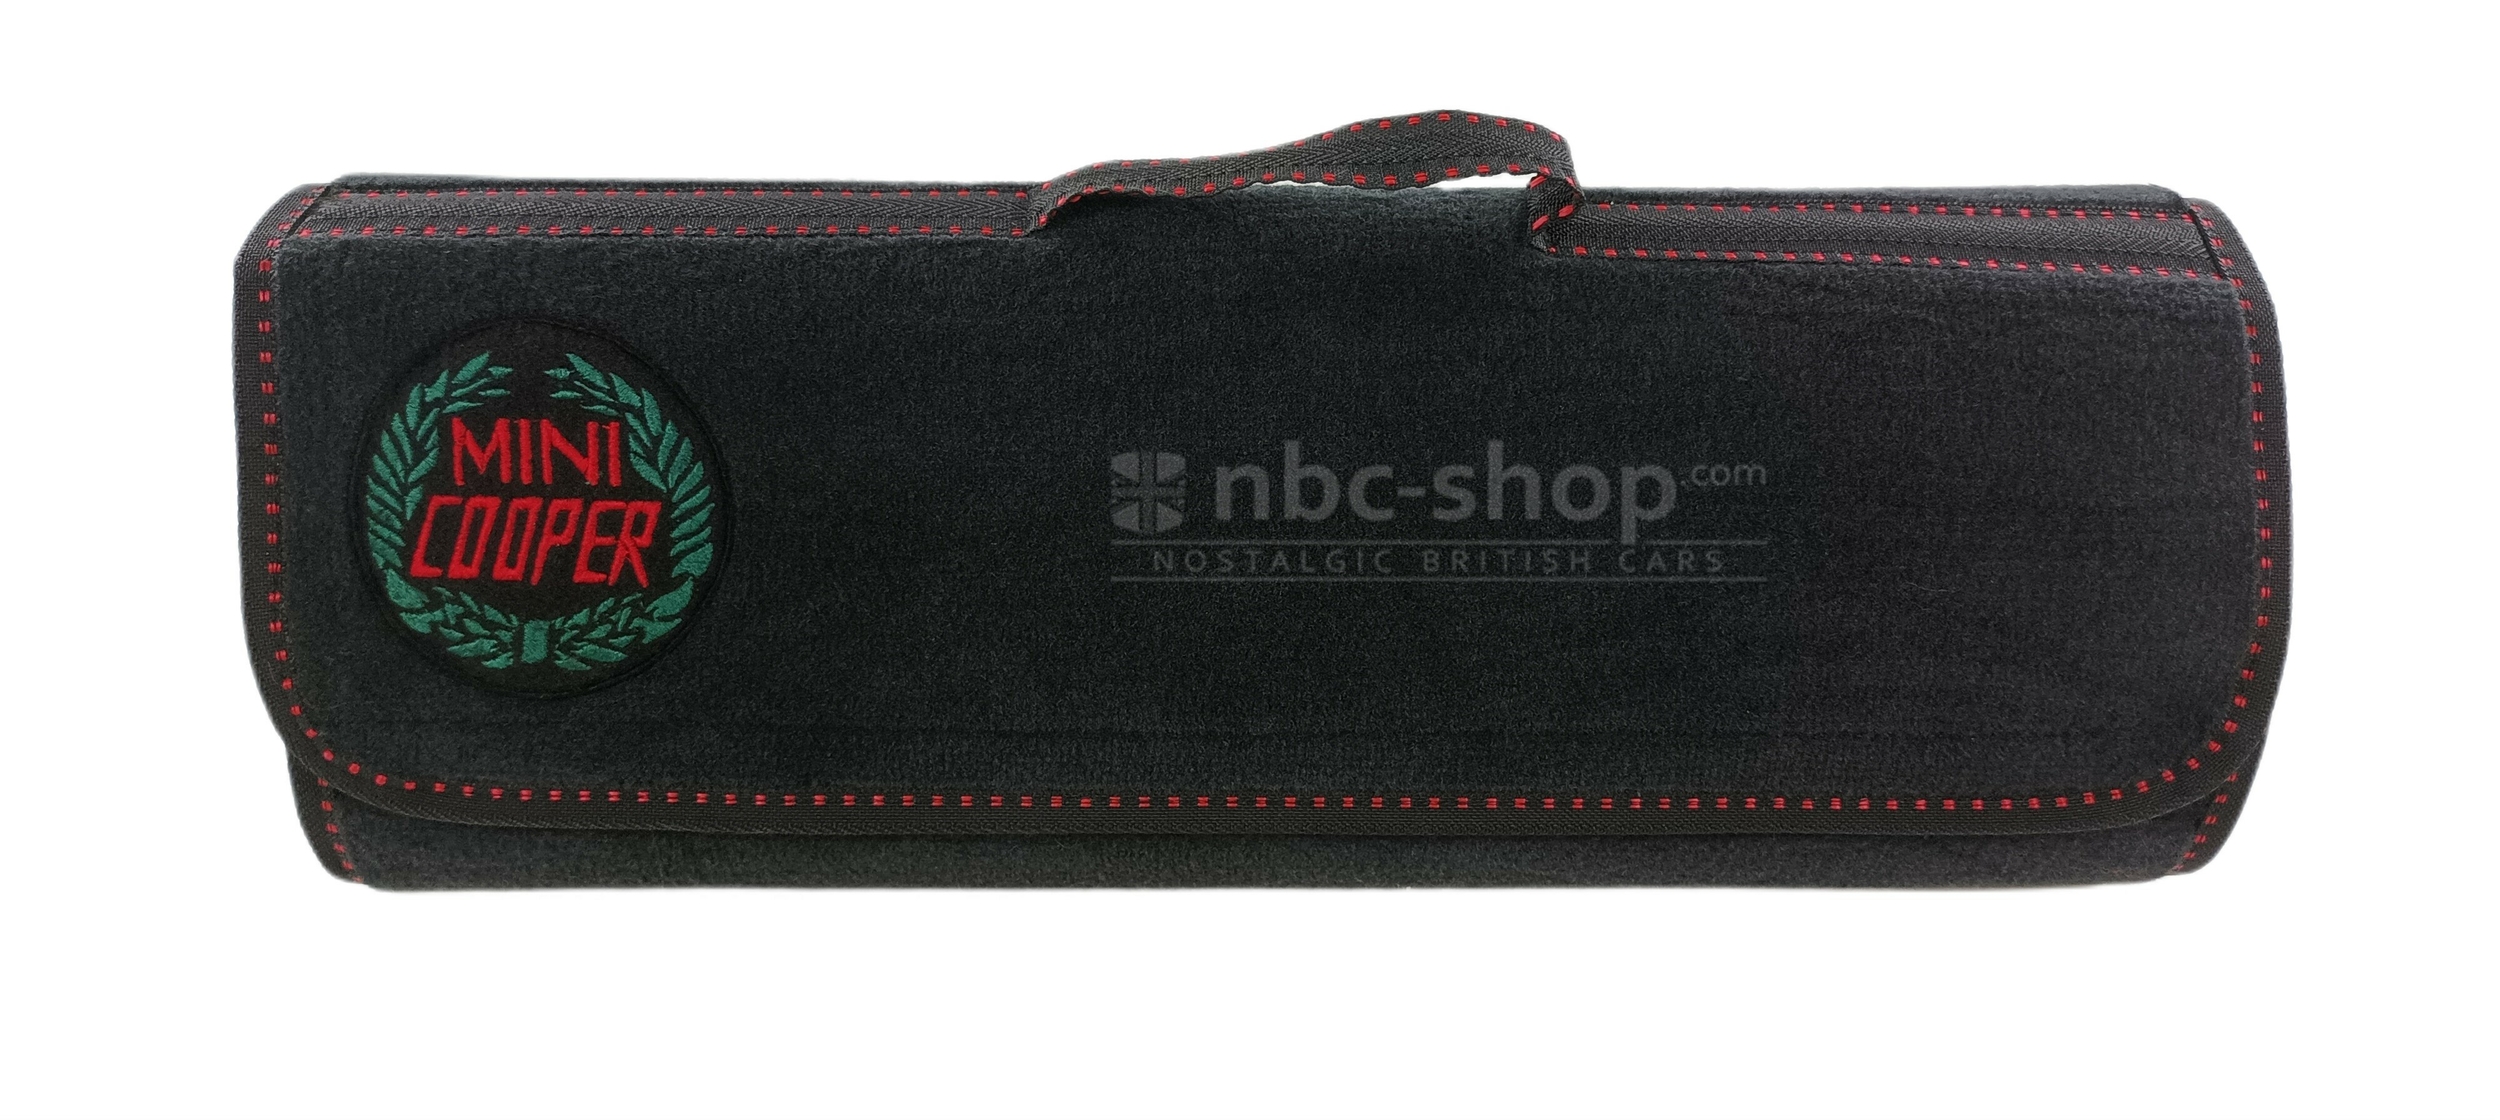 sac de coffre logo Mini Cooper laurier nbc-shop